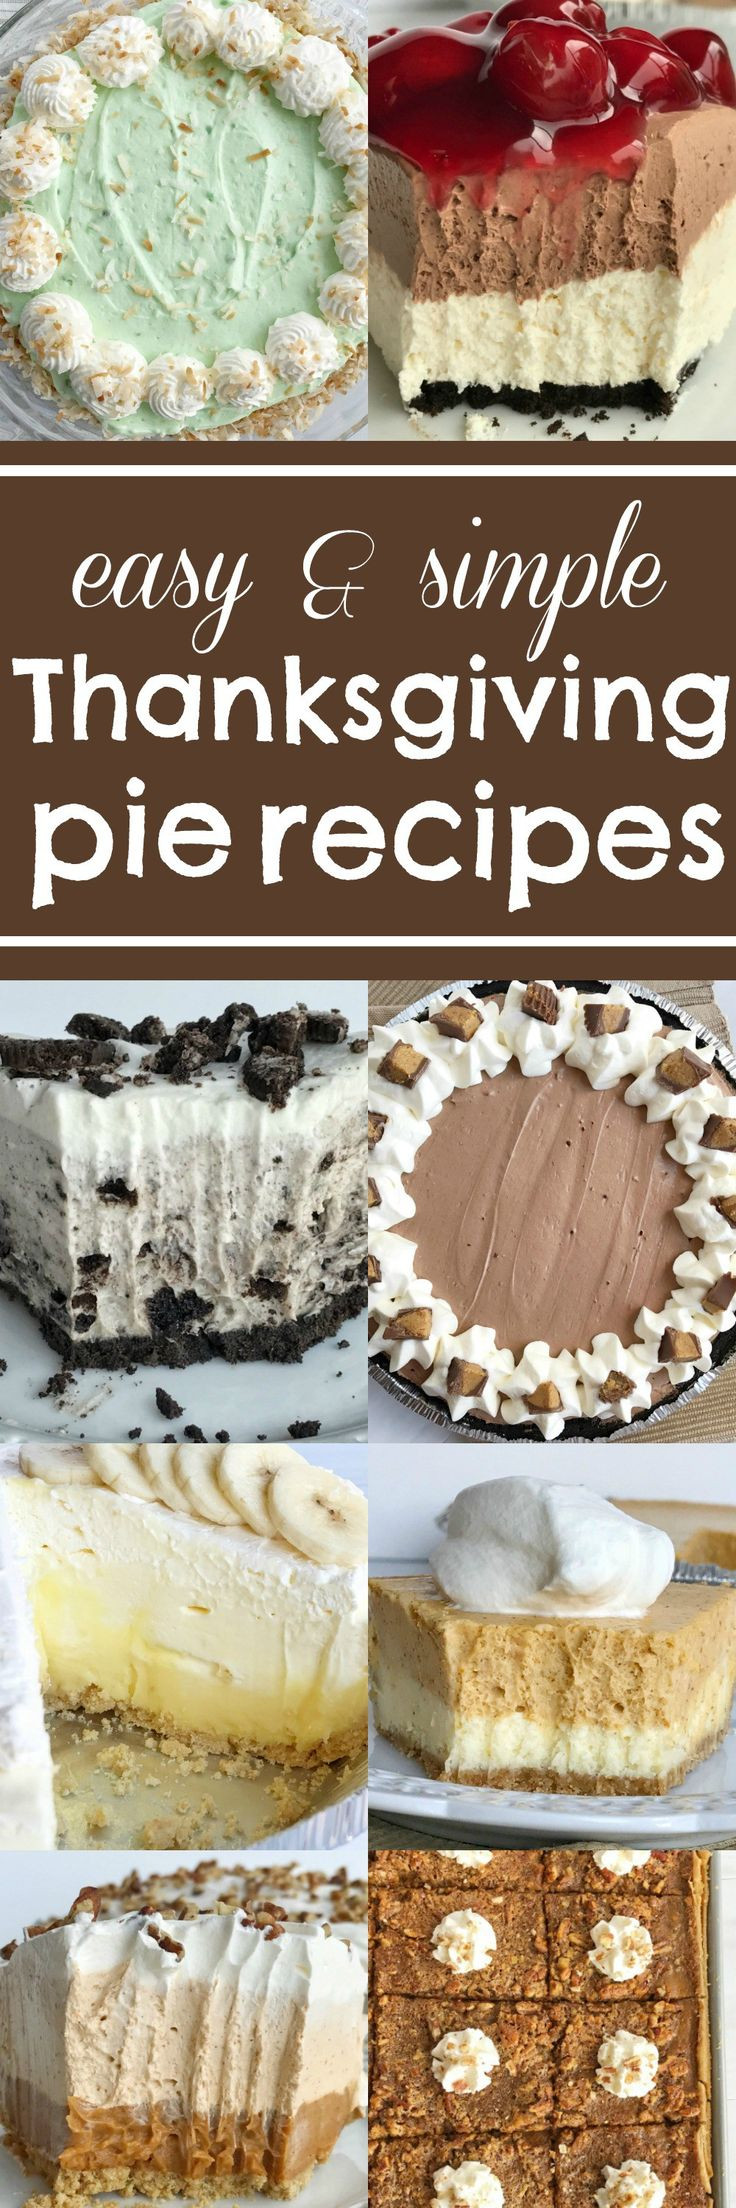 Best Thanksgiving Pie Recipes
 Best 25 Thanksgiving desserts ideas on Pinterest